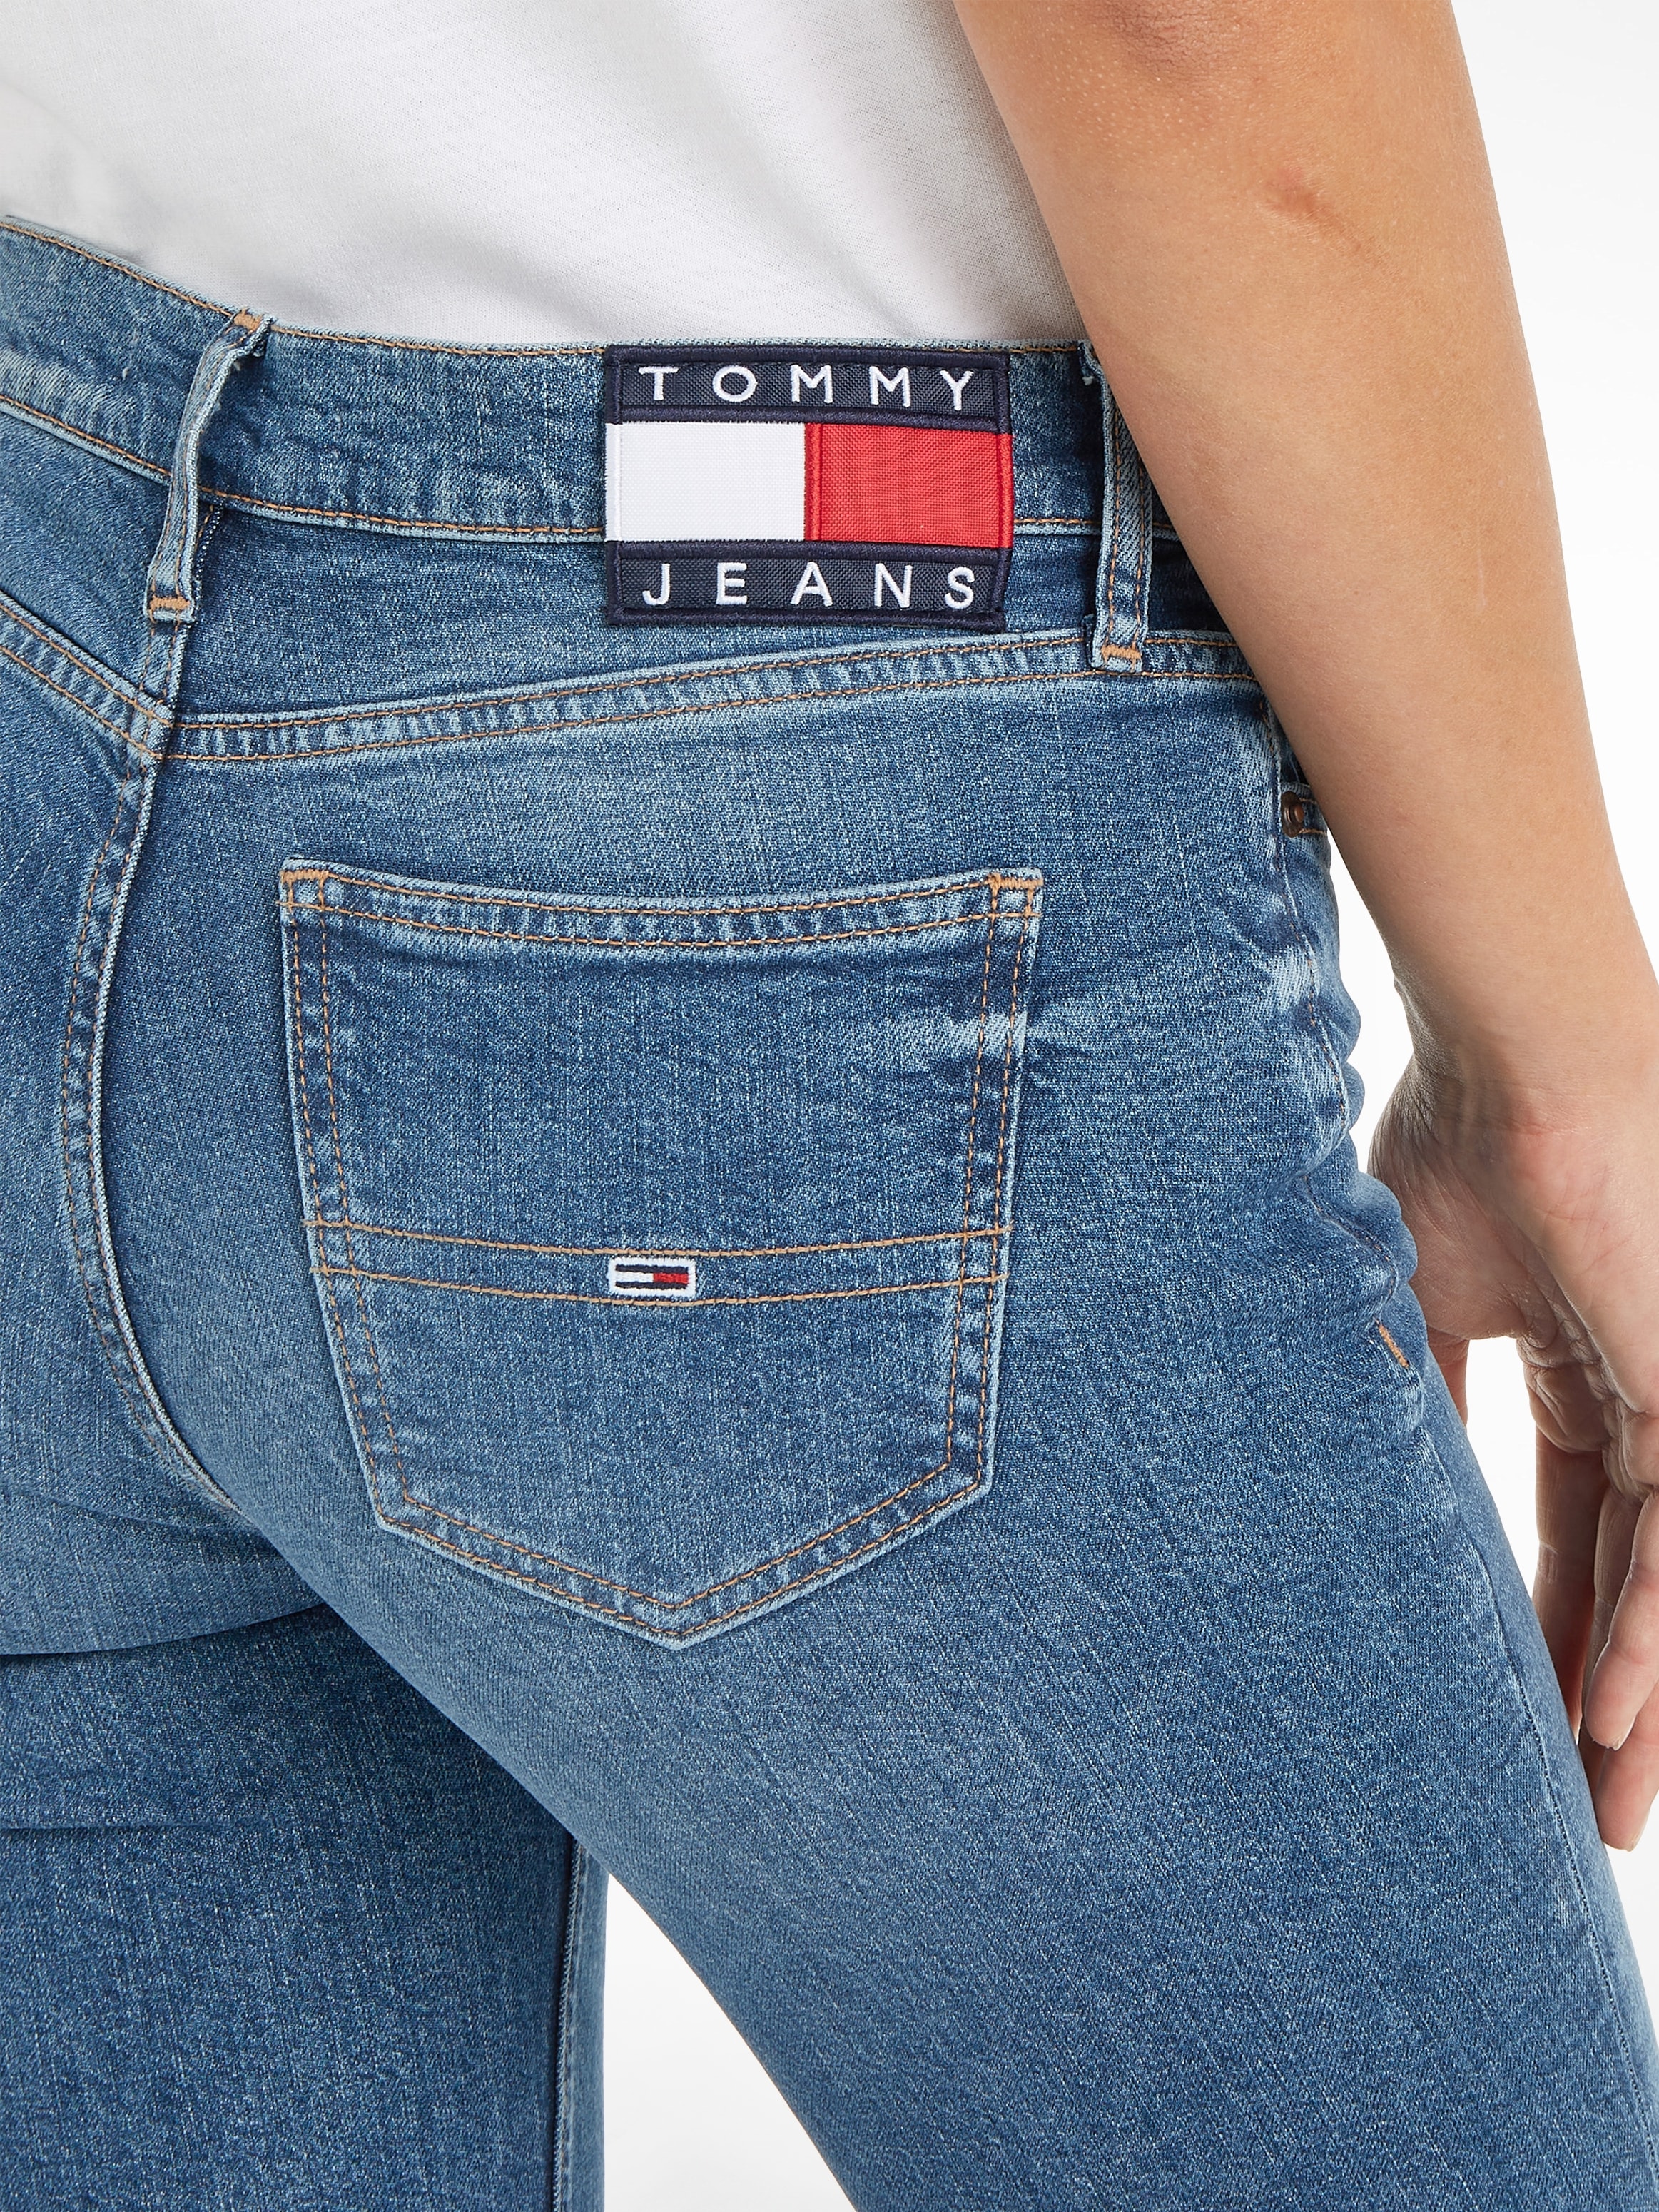 Schweiz kaufen bei Tommy Jeans online MR DG5161«, und »MADDIE Bootcut-Jeans Jelmoli-Versand mit Logobadge BC Logostickerei